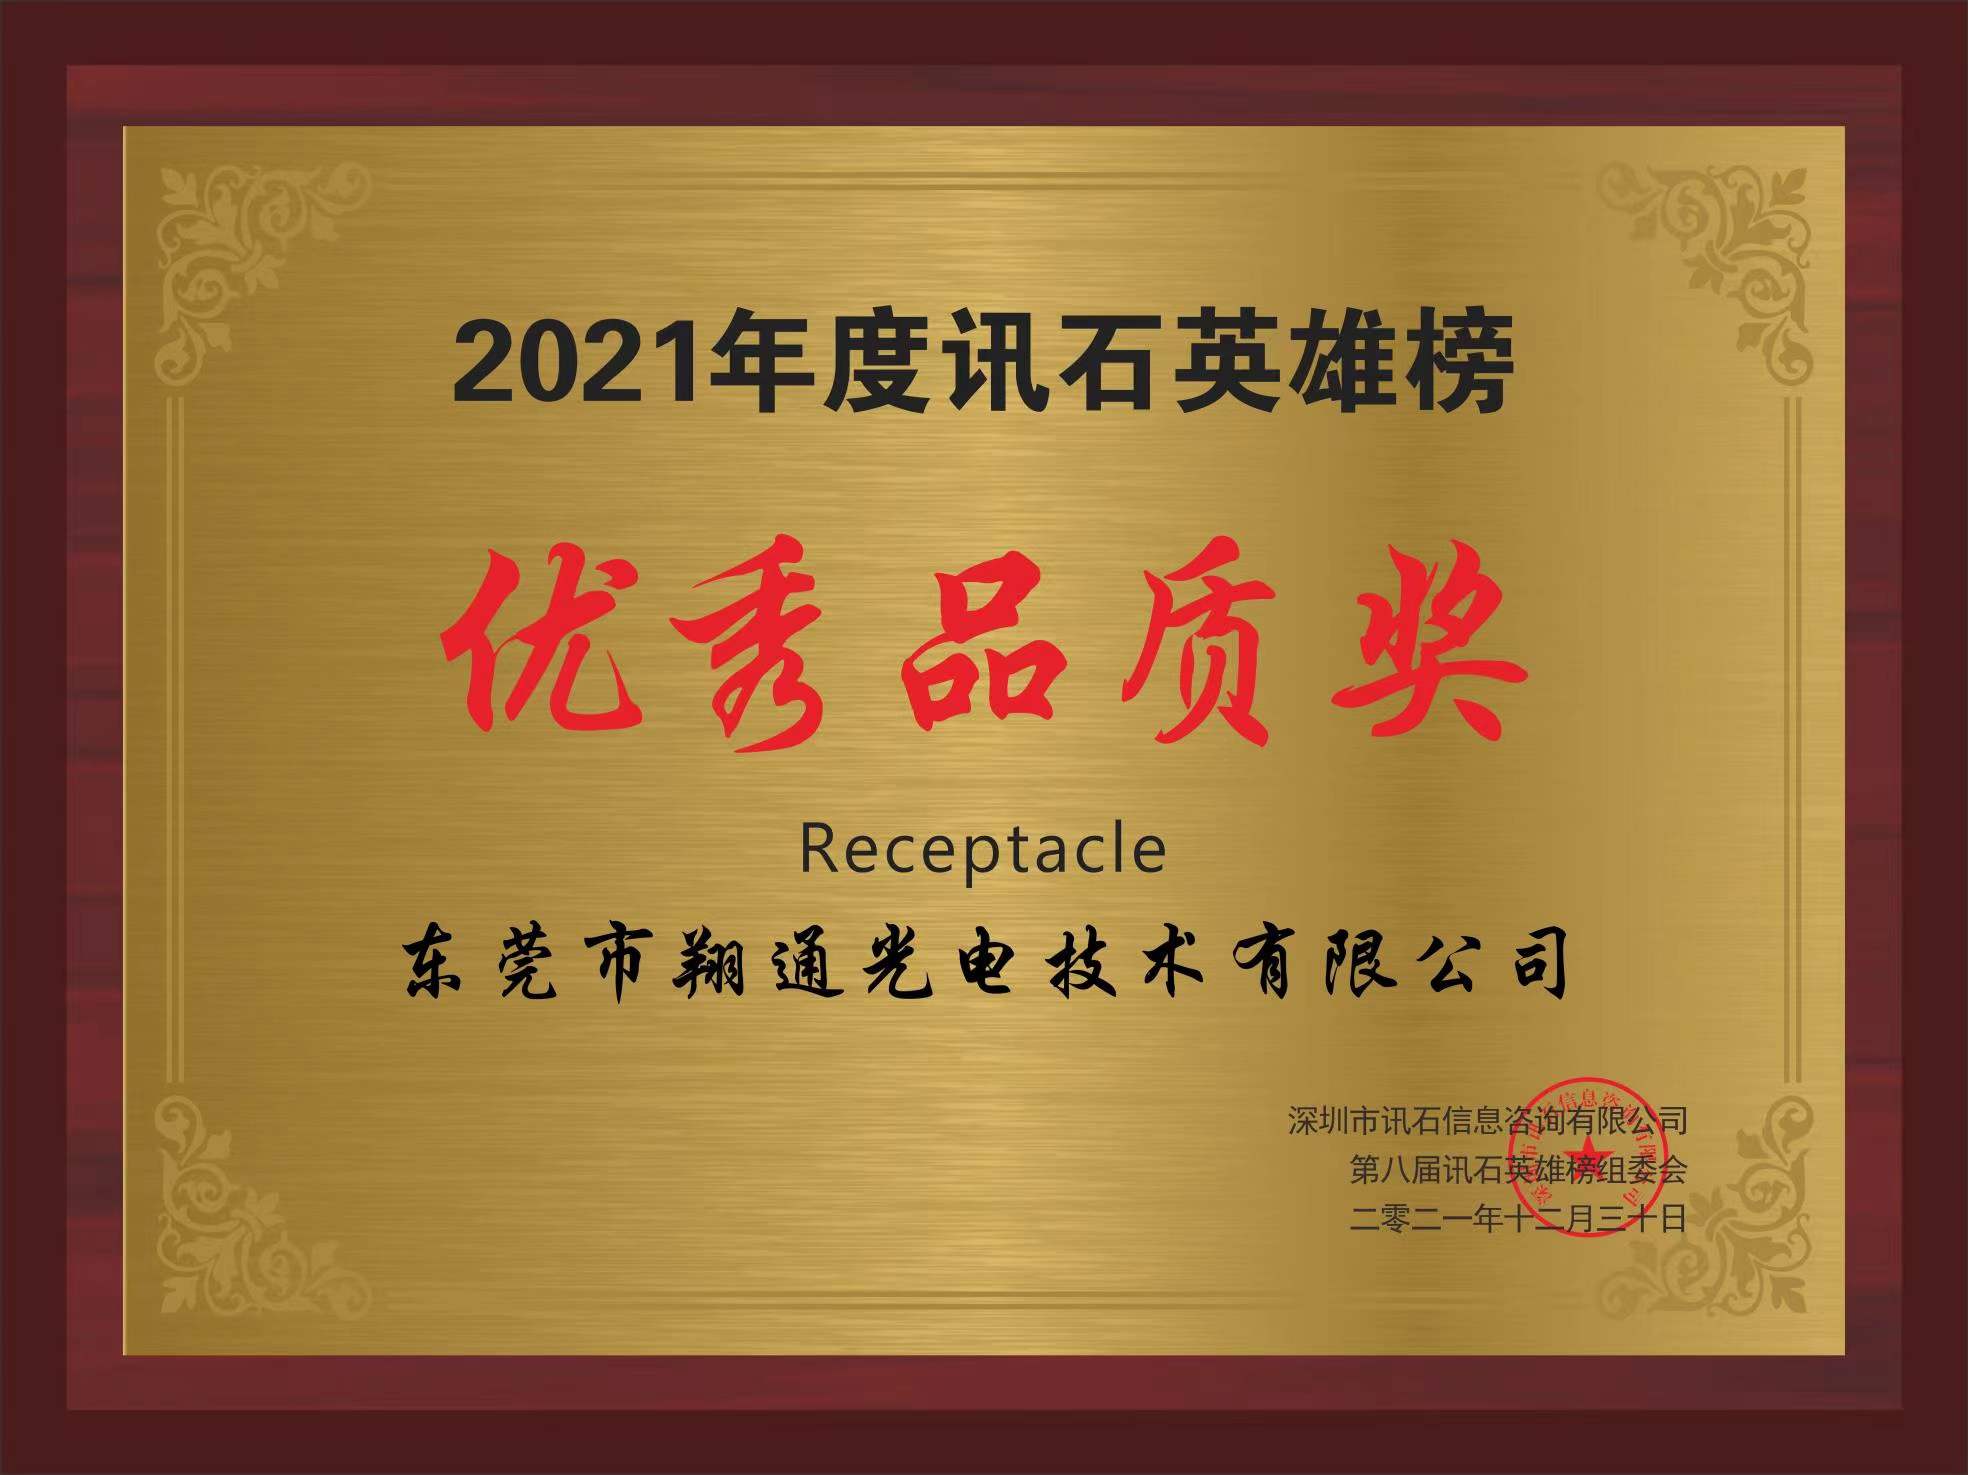 恭喜翔通荣获2021年度讯石英雄榜“品质奖”